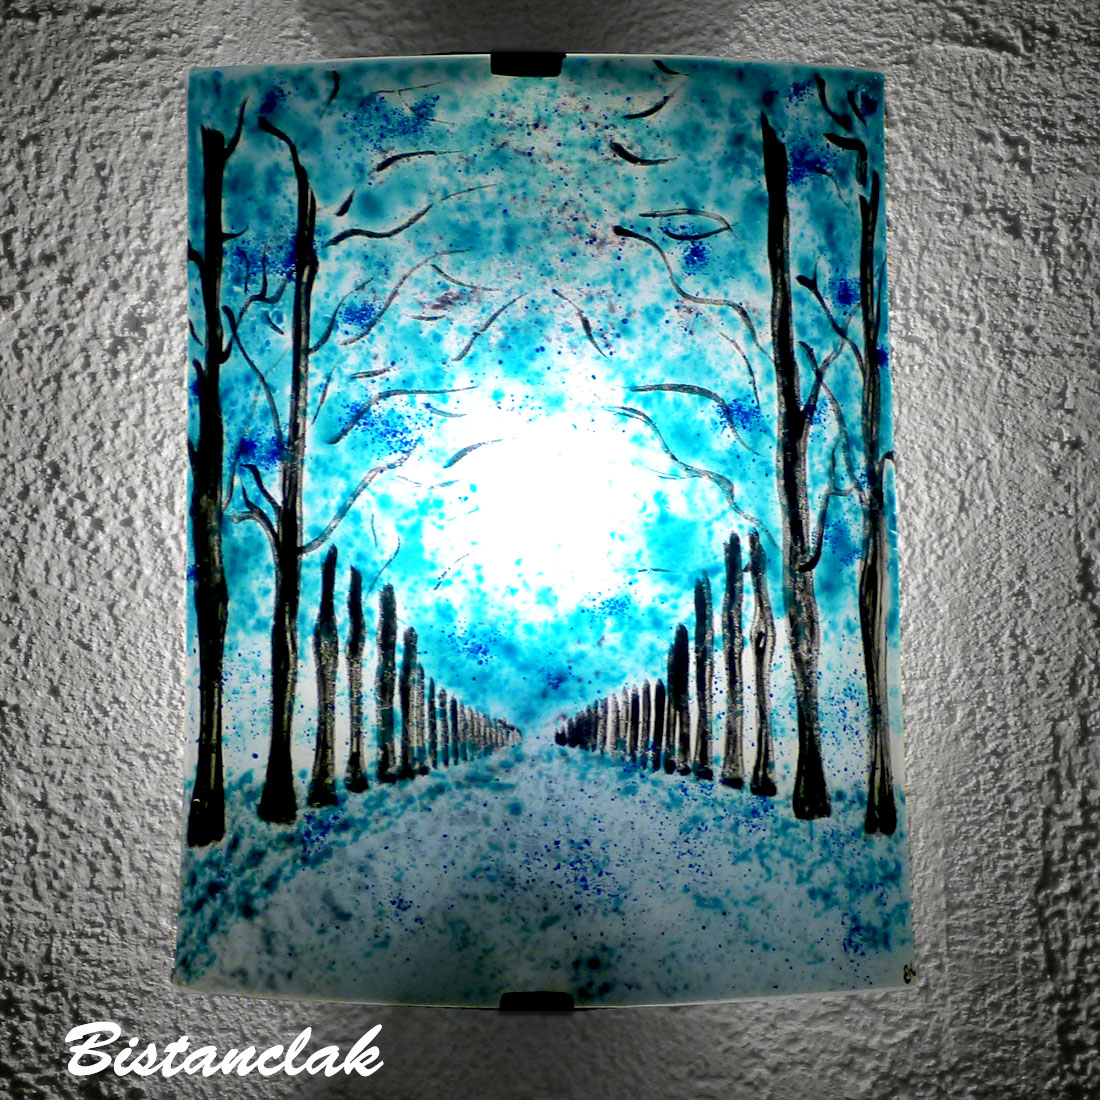 Applique luminaire incurvee motif allee d arbres bleu vendue en ligne sur notr site une creation artisanale francaise